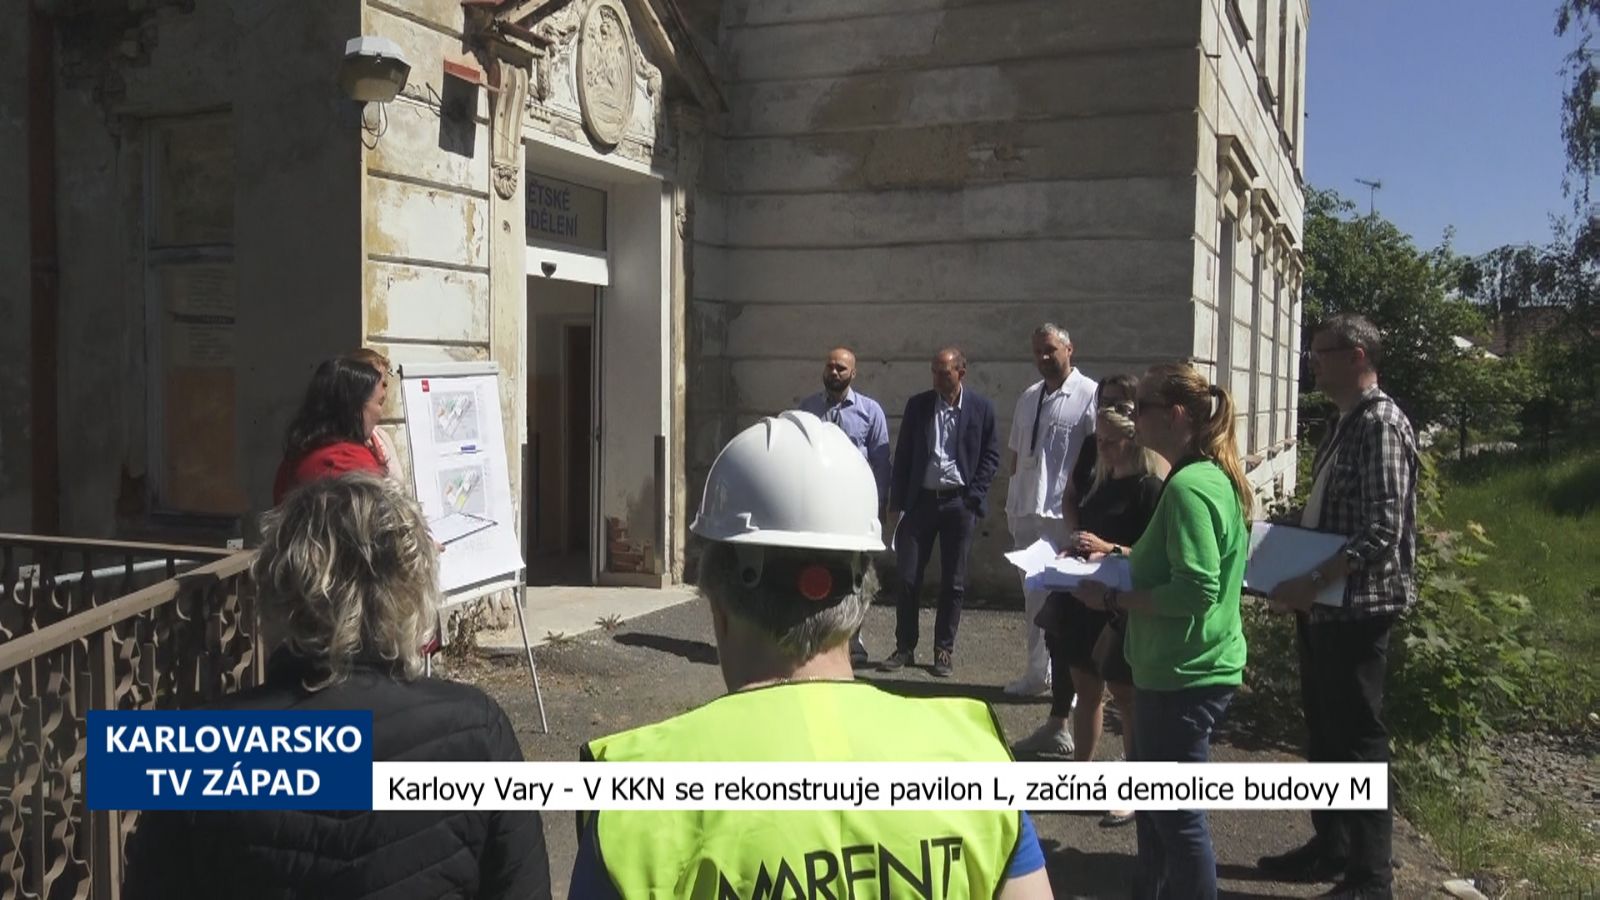 Karlovy Vary: V KKN se rekonstruuje pavilon L, začíná demolice budovy M (TV Západ)